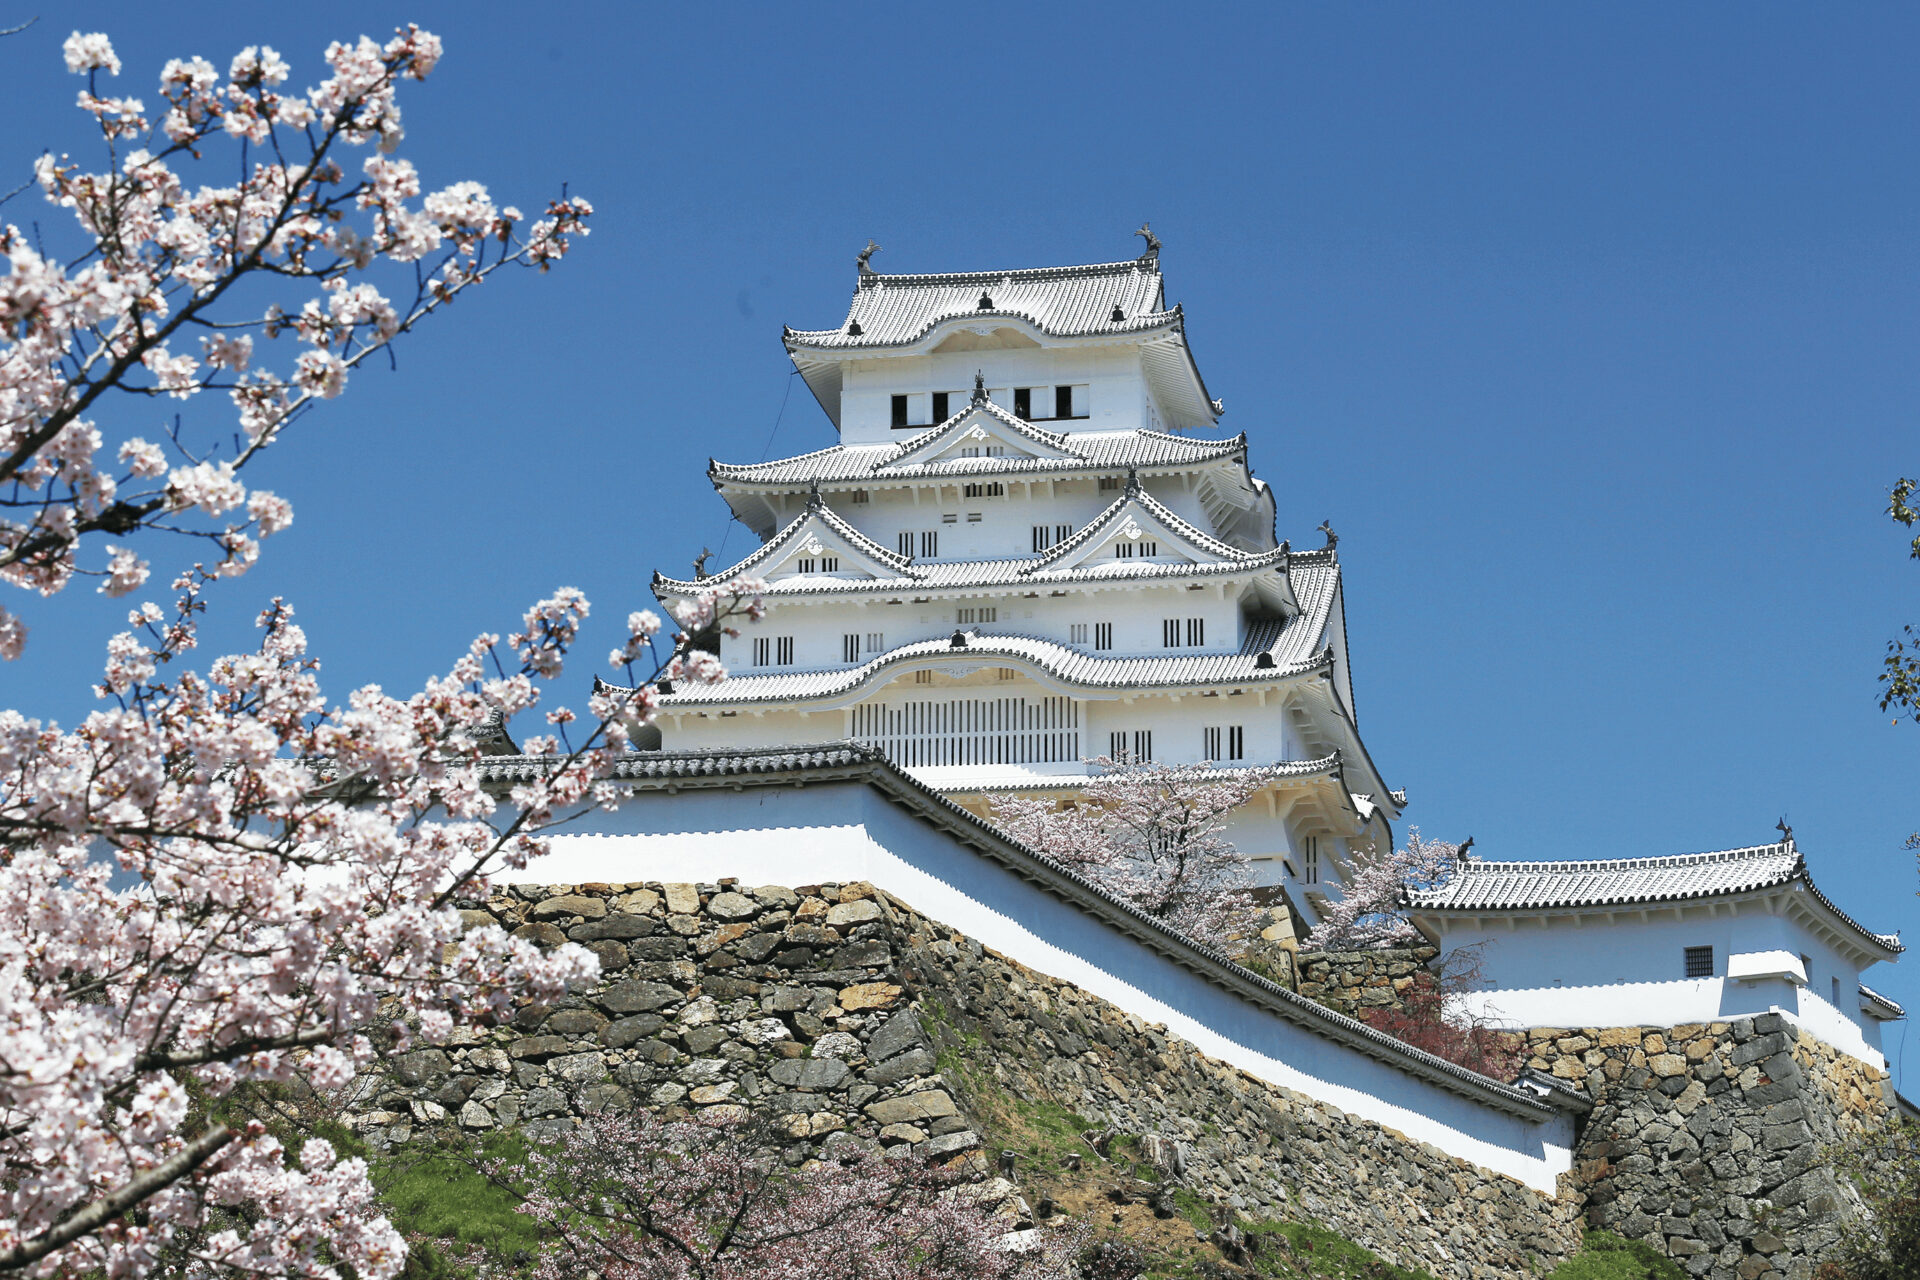 その優美な姿から 「白鷺城」とも呼ばれる 世界文化遺産「姫路城」